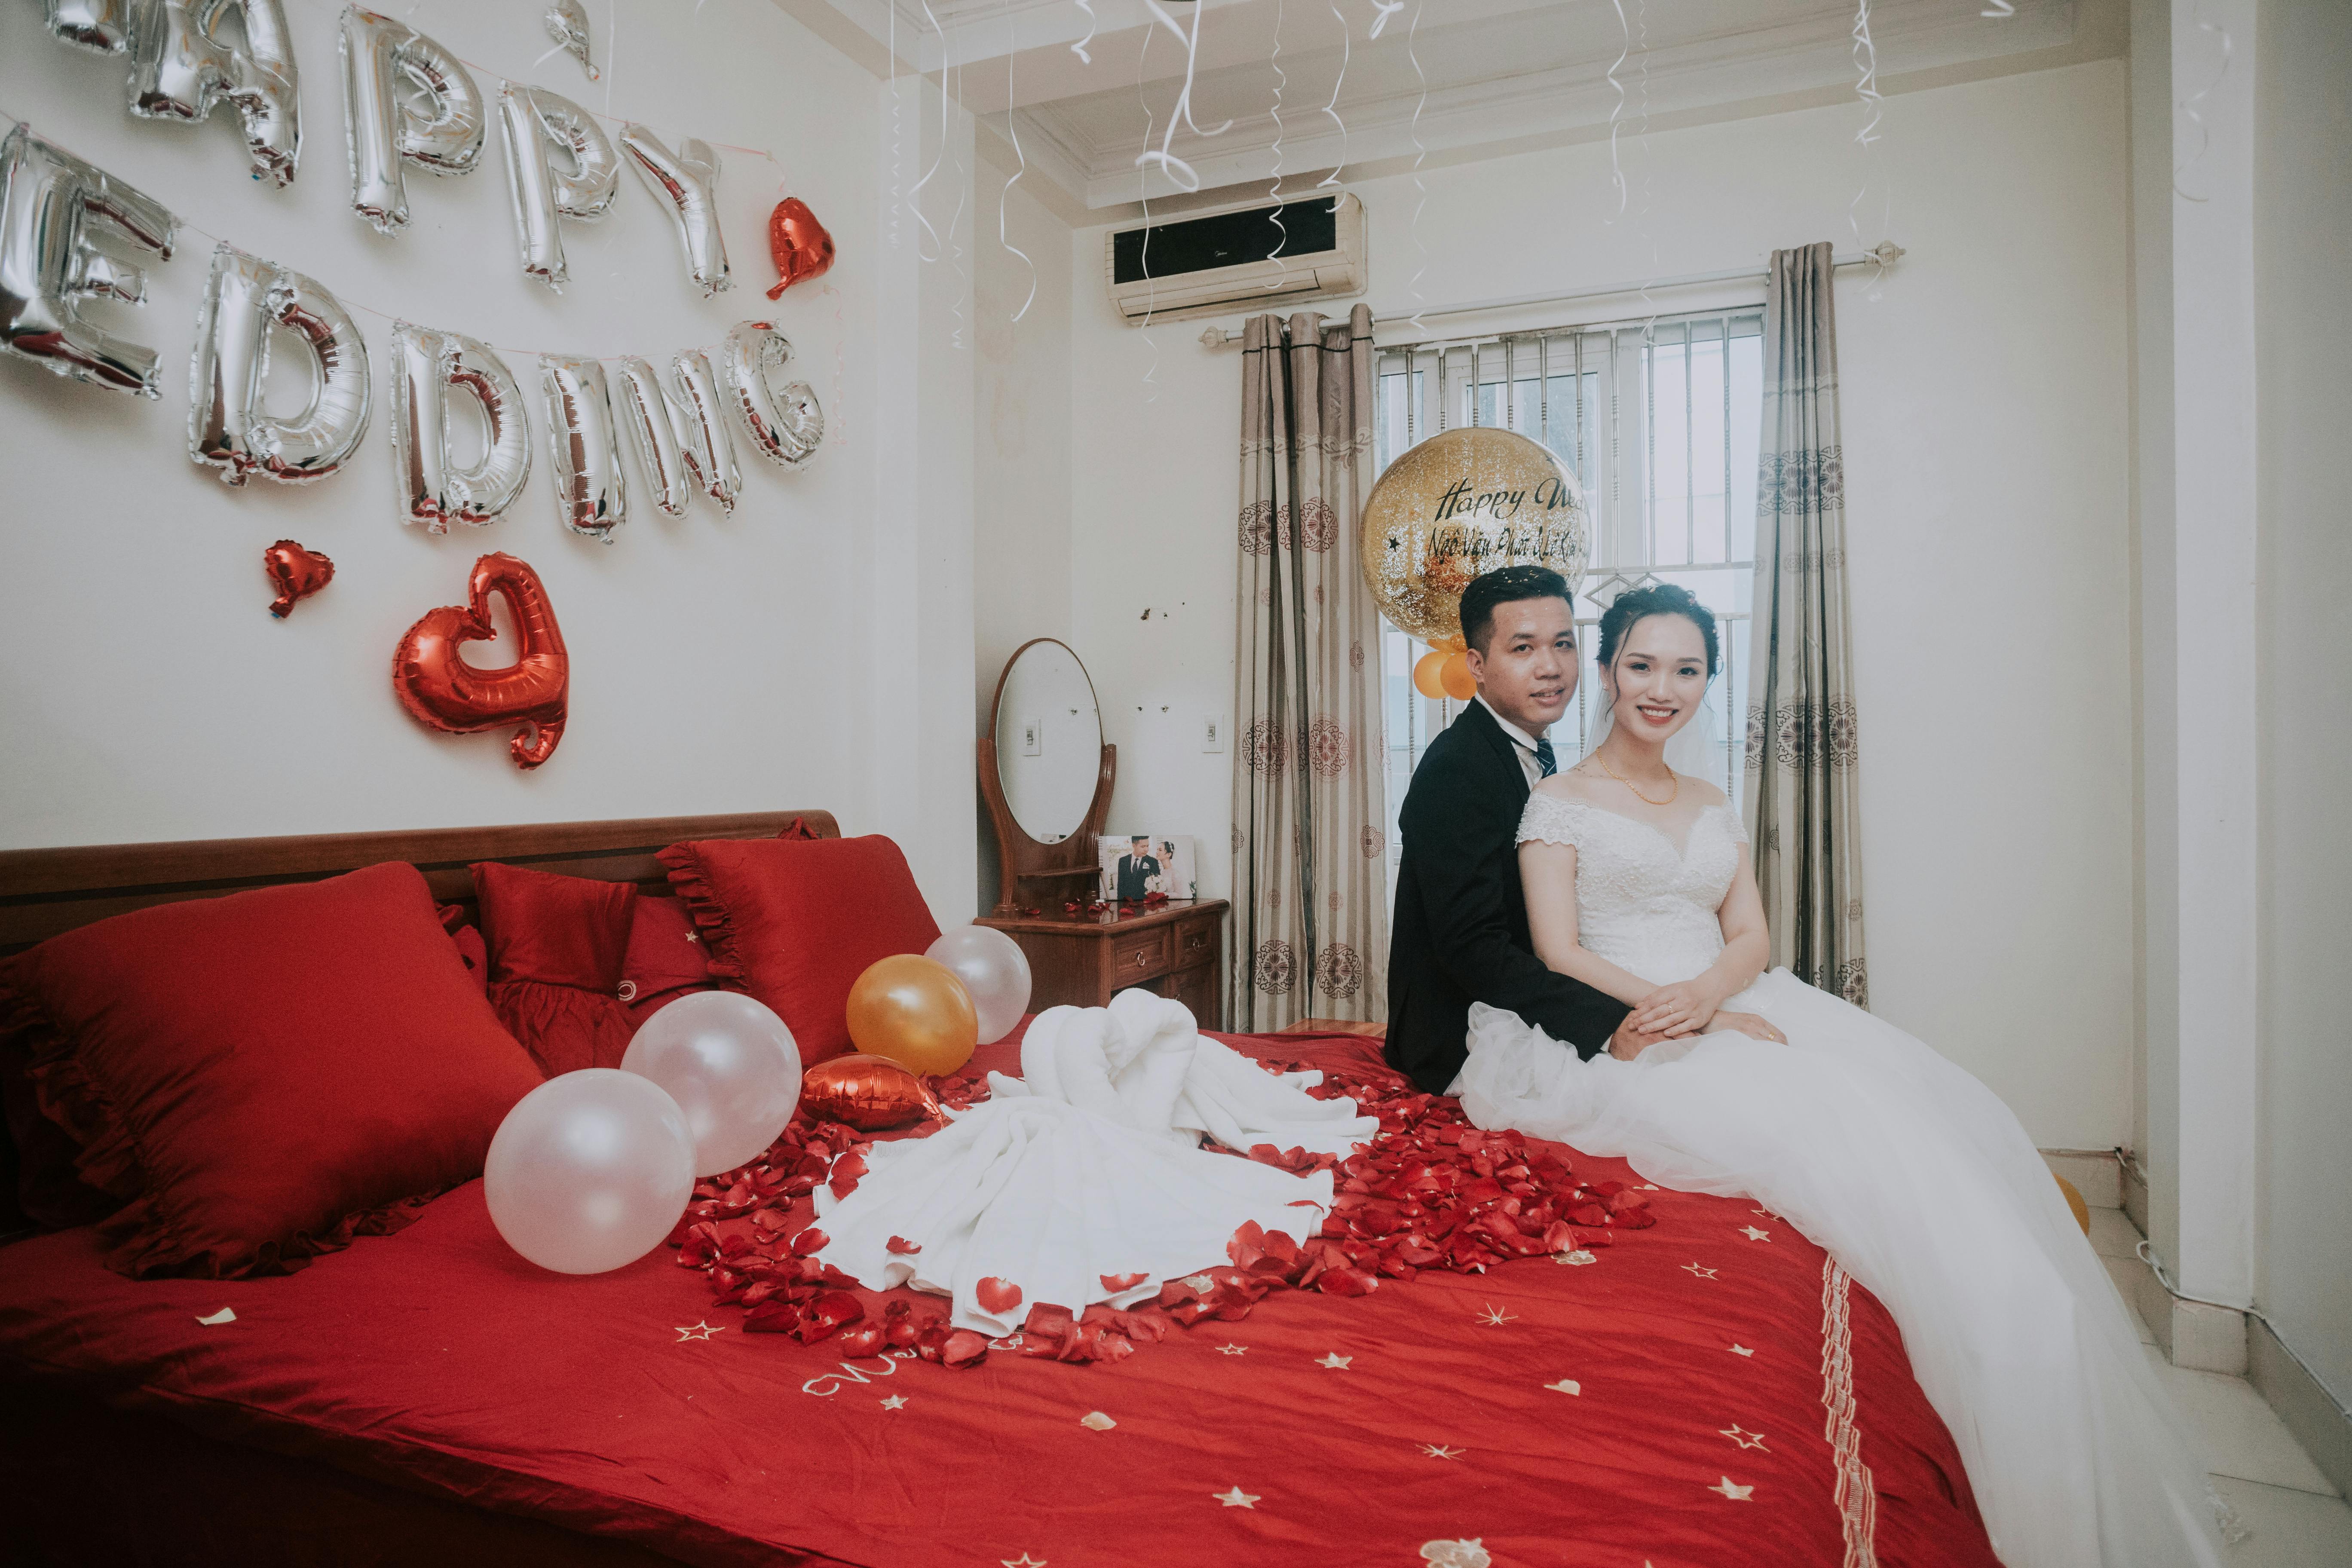 Un couple photographié sur le lit d'une chambre d'hôtel | Source : Pexels